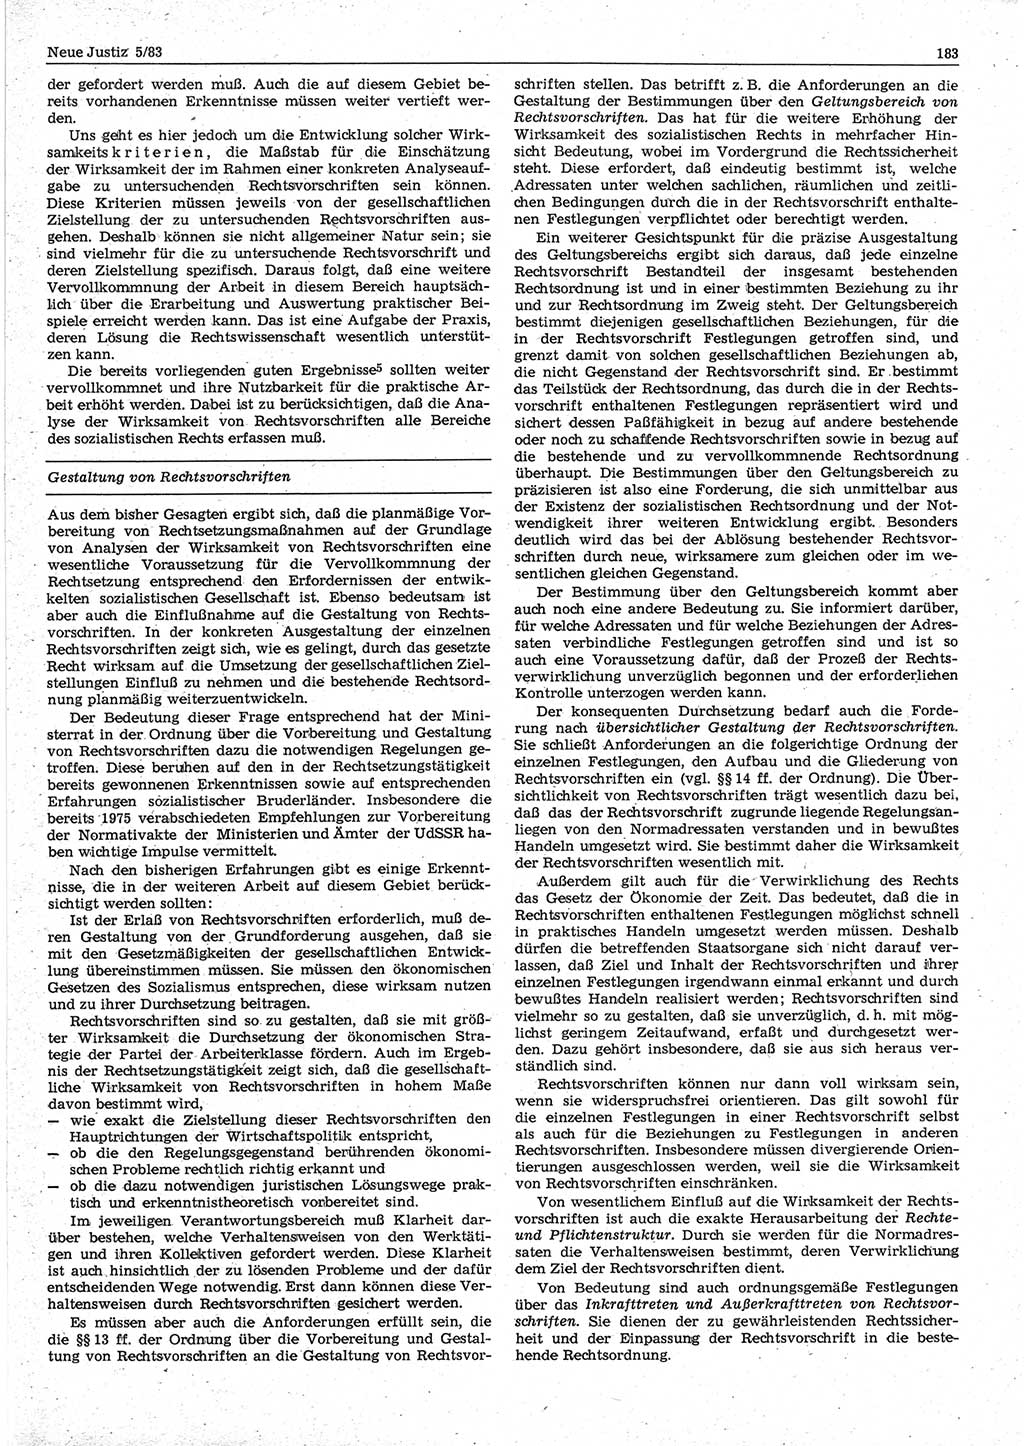 Neue Justiz (NJ), Zeitschrift für sozialistisches Recht und Gesetzlichkeit [Deutsche Demokratische Republik (DDR)], 37. Jahrgang 1983, Seite 183 (NJ DDR 1983, S. 183)